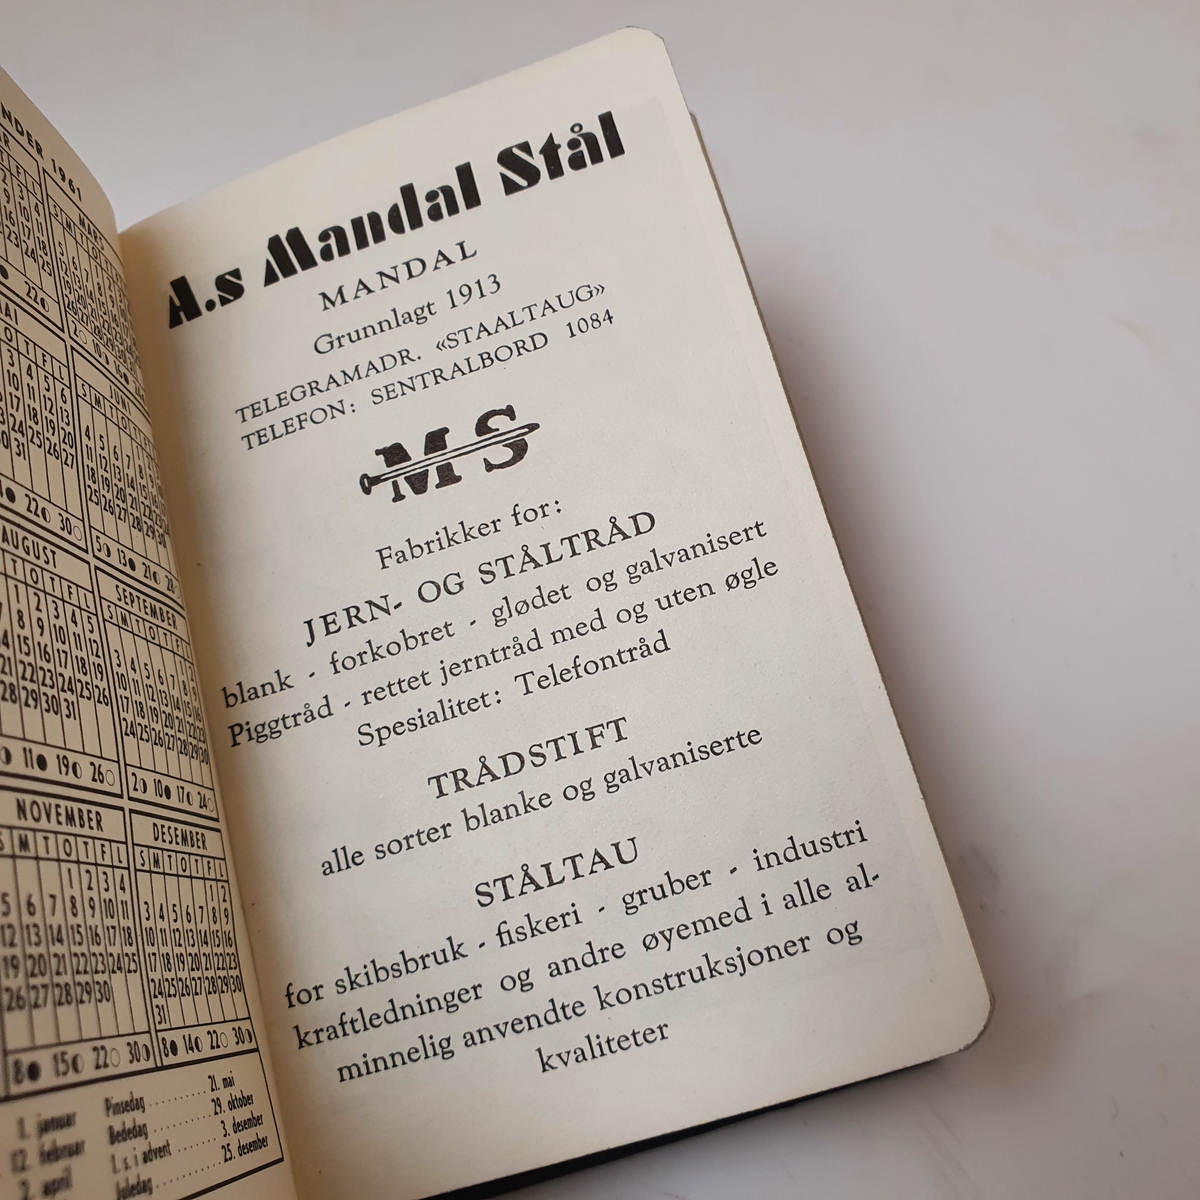 Almanakk fra A.S. Mandal Stål for året 1961.